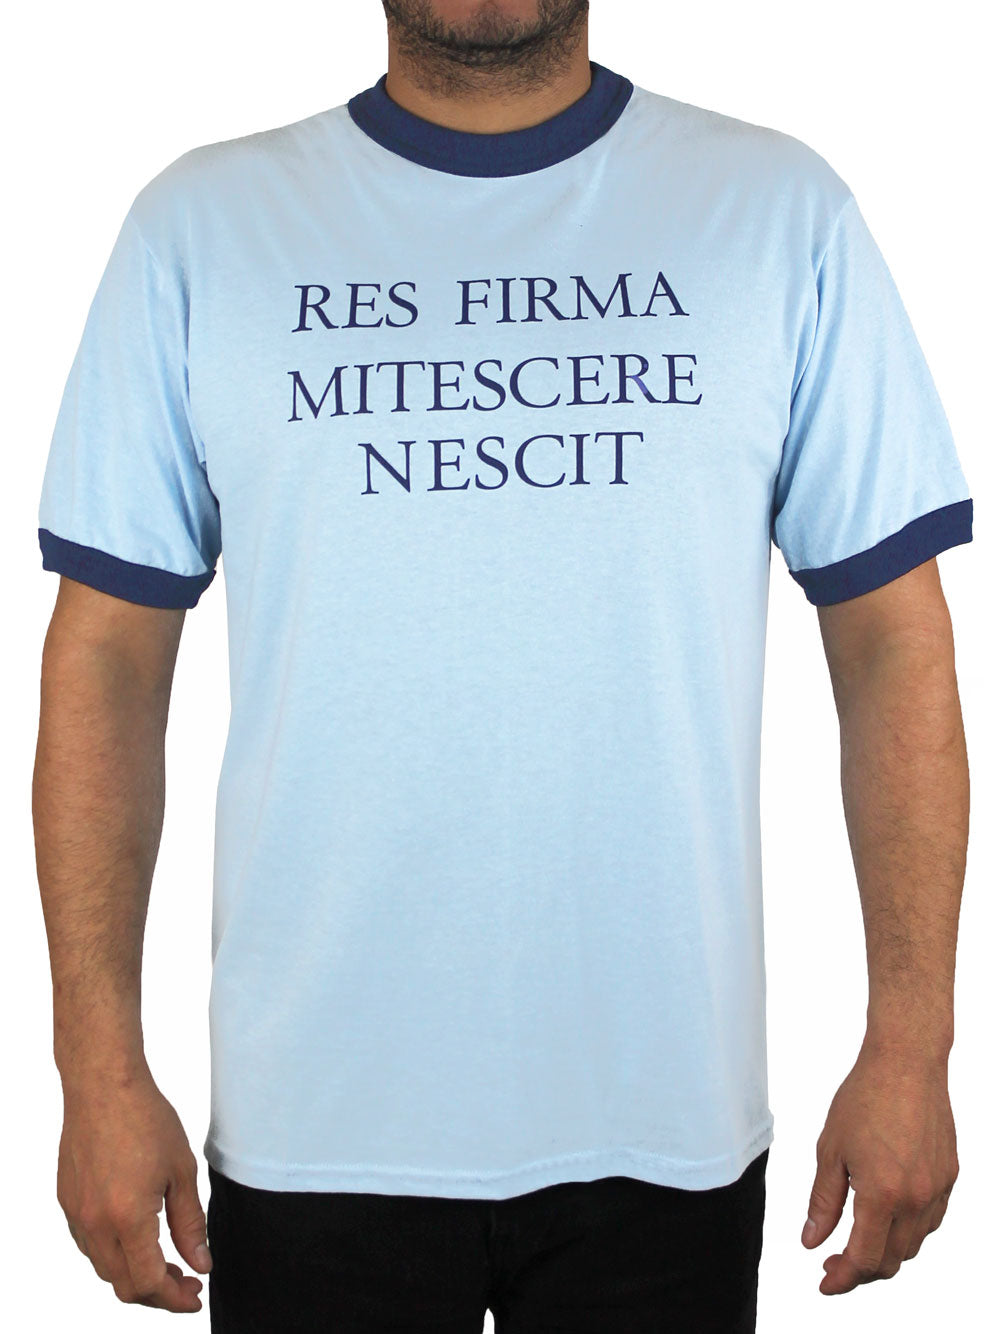 Essential T-Shirt for Sale mit Auto-Lufterfrischer-lustiges Zitat